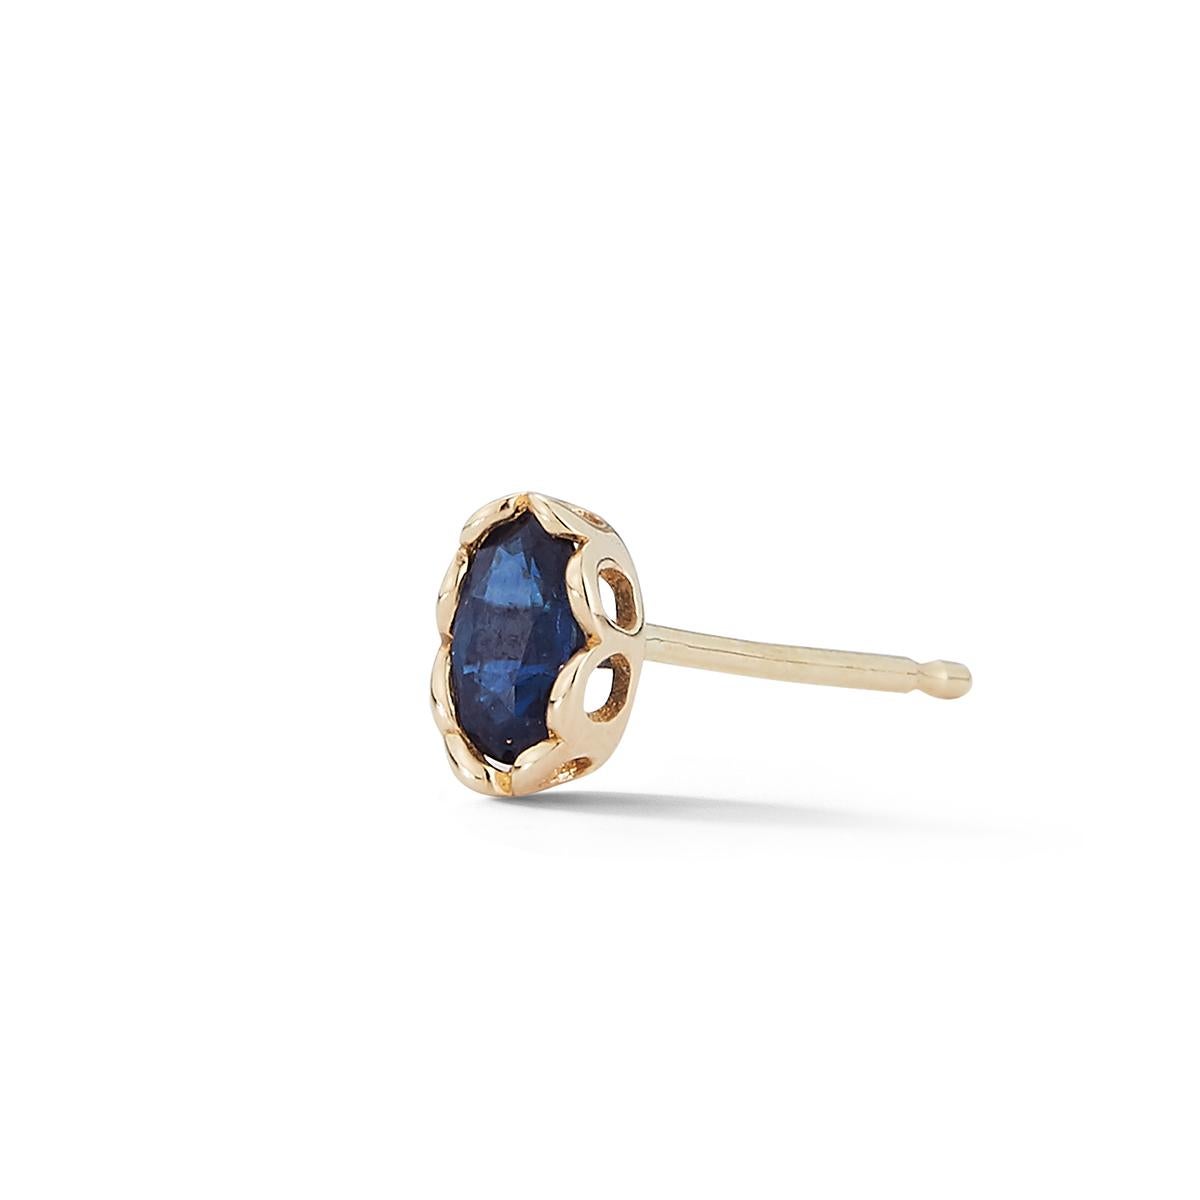 Blauer Saphir in ovaler Form, gefasst in einer durchbrochenen Fassung.
Einfach zu tragen und ideal zum Kombinieren mit Ihren Lieblings-Ohrringen, um Ihr Outfit zu aktualisieren
ohrenspiel. Verkauft als EINZELNER Ohrring, kaufen Sie zwei, um sie als